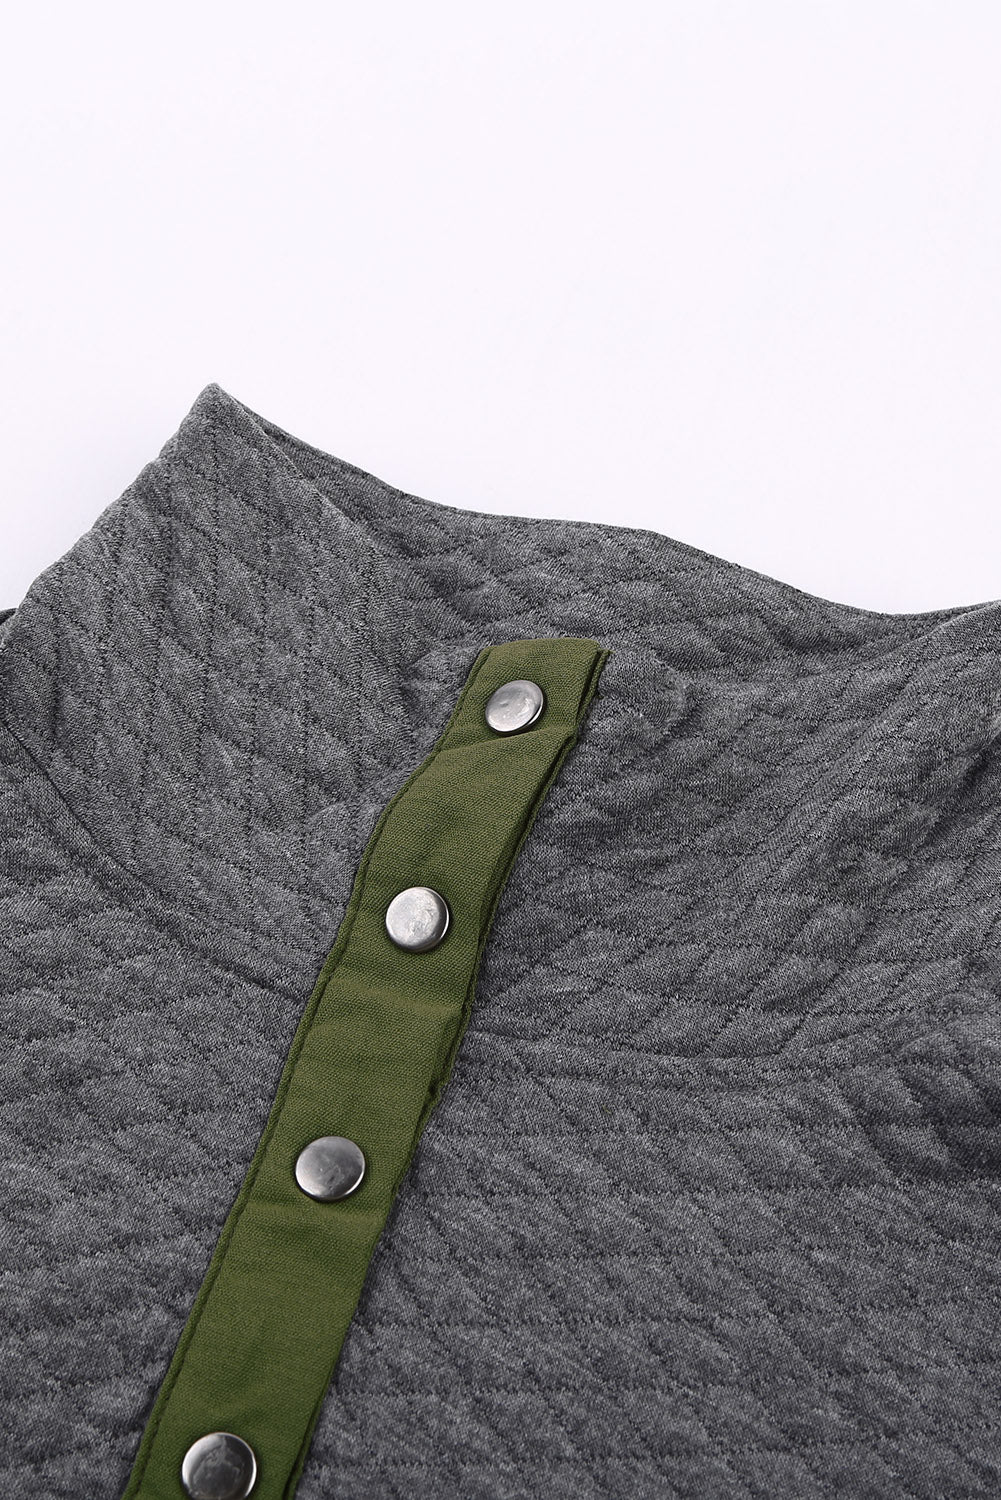 Felpa pullover grigia trapuntata con bottoni automatici e tasca frontale finta